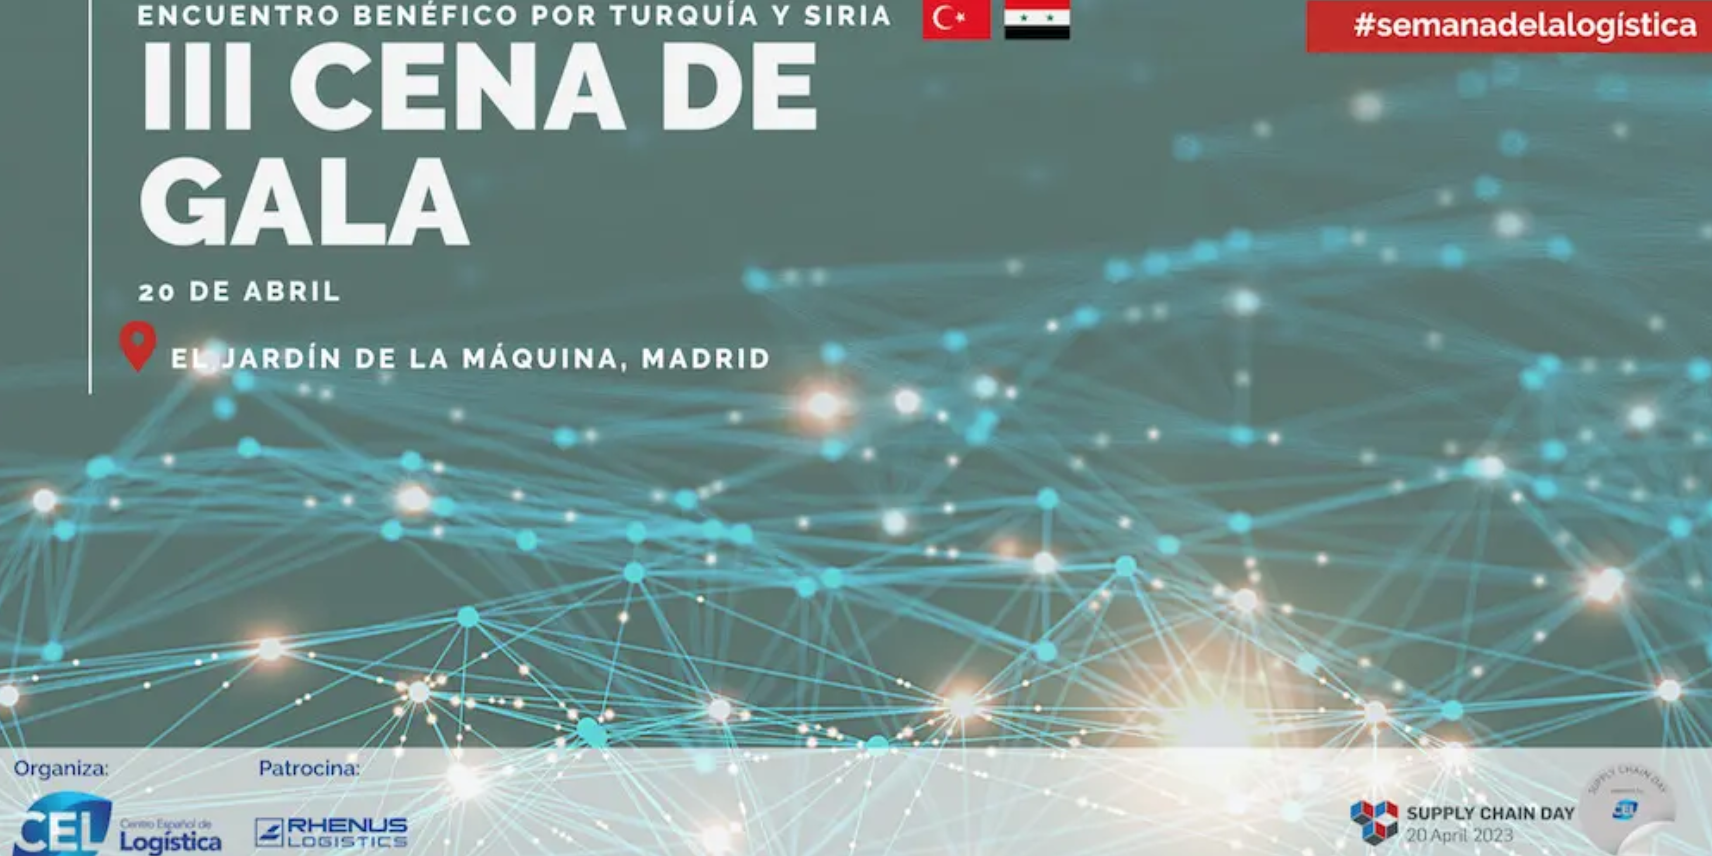 El CEL recaudará fondos para Turquía y Siria en la III Cena de Gala de la Logística